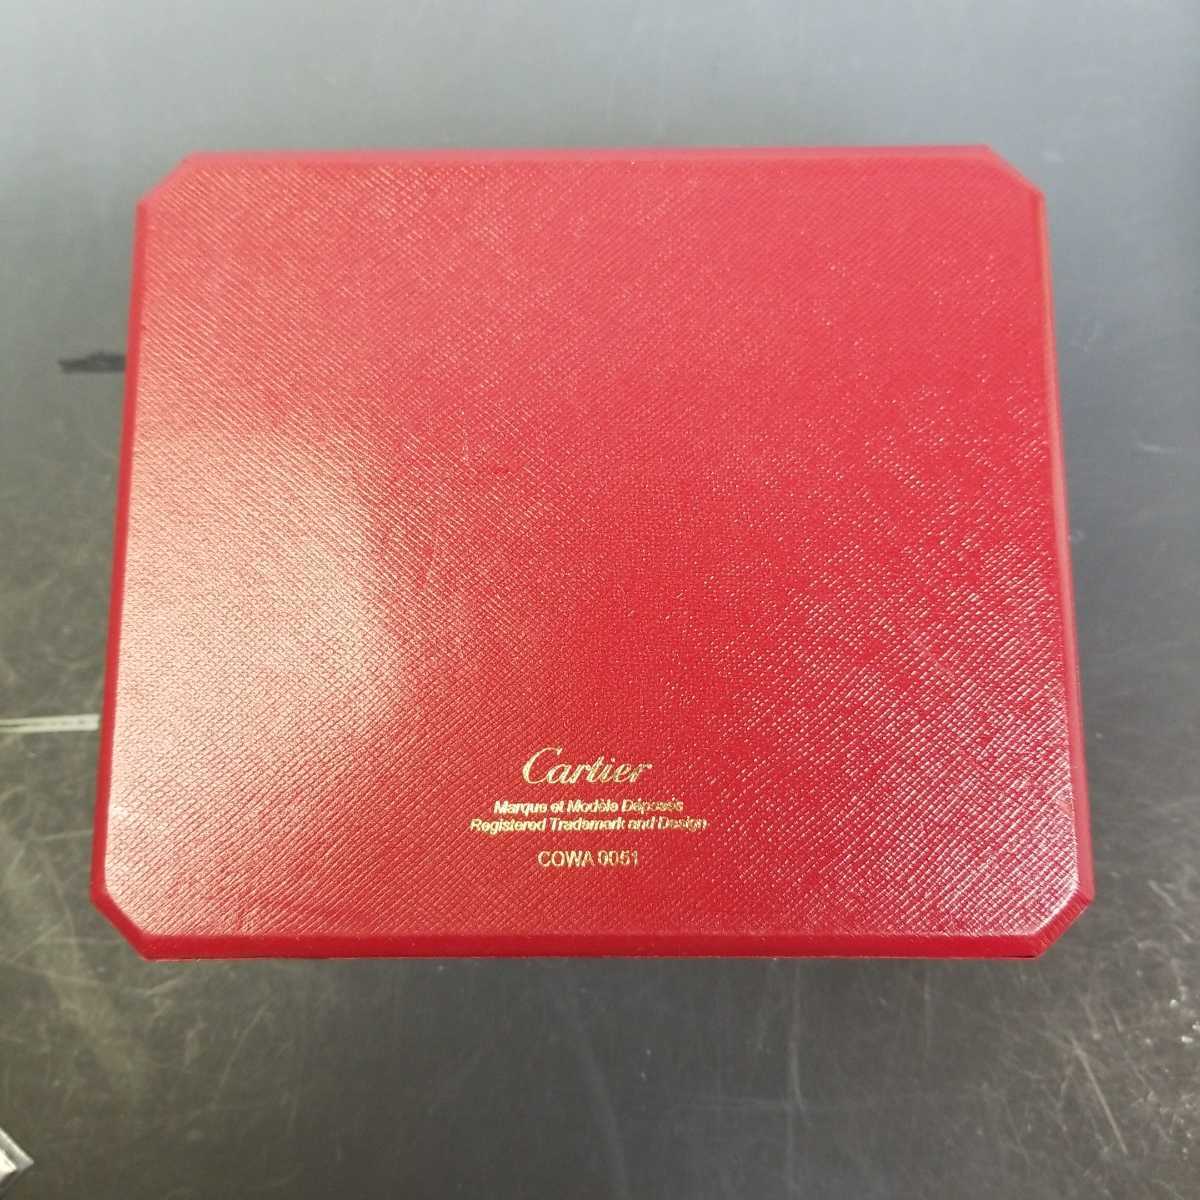 超希少 Cartier カルティエ COWA 0035 腕時計 空箱